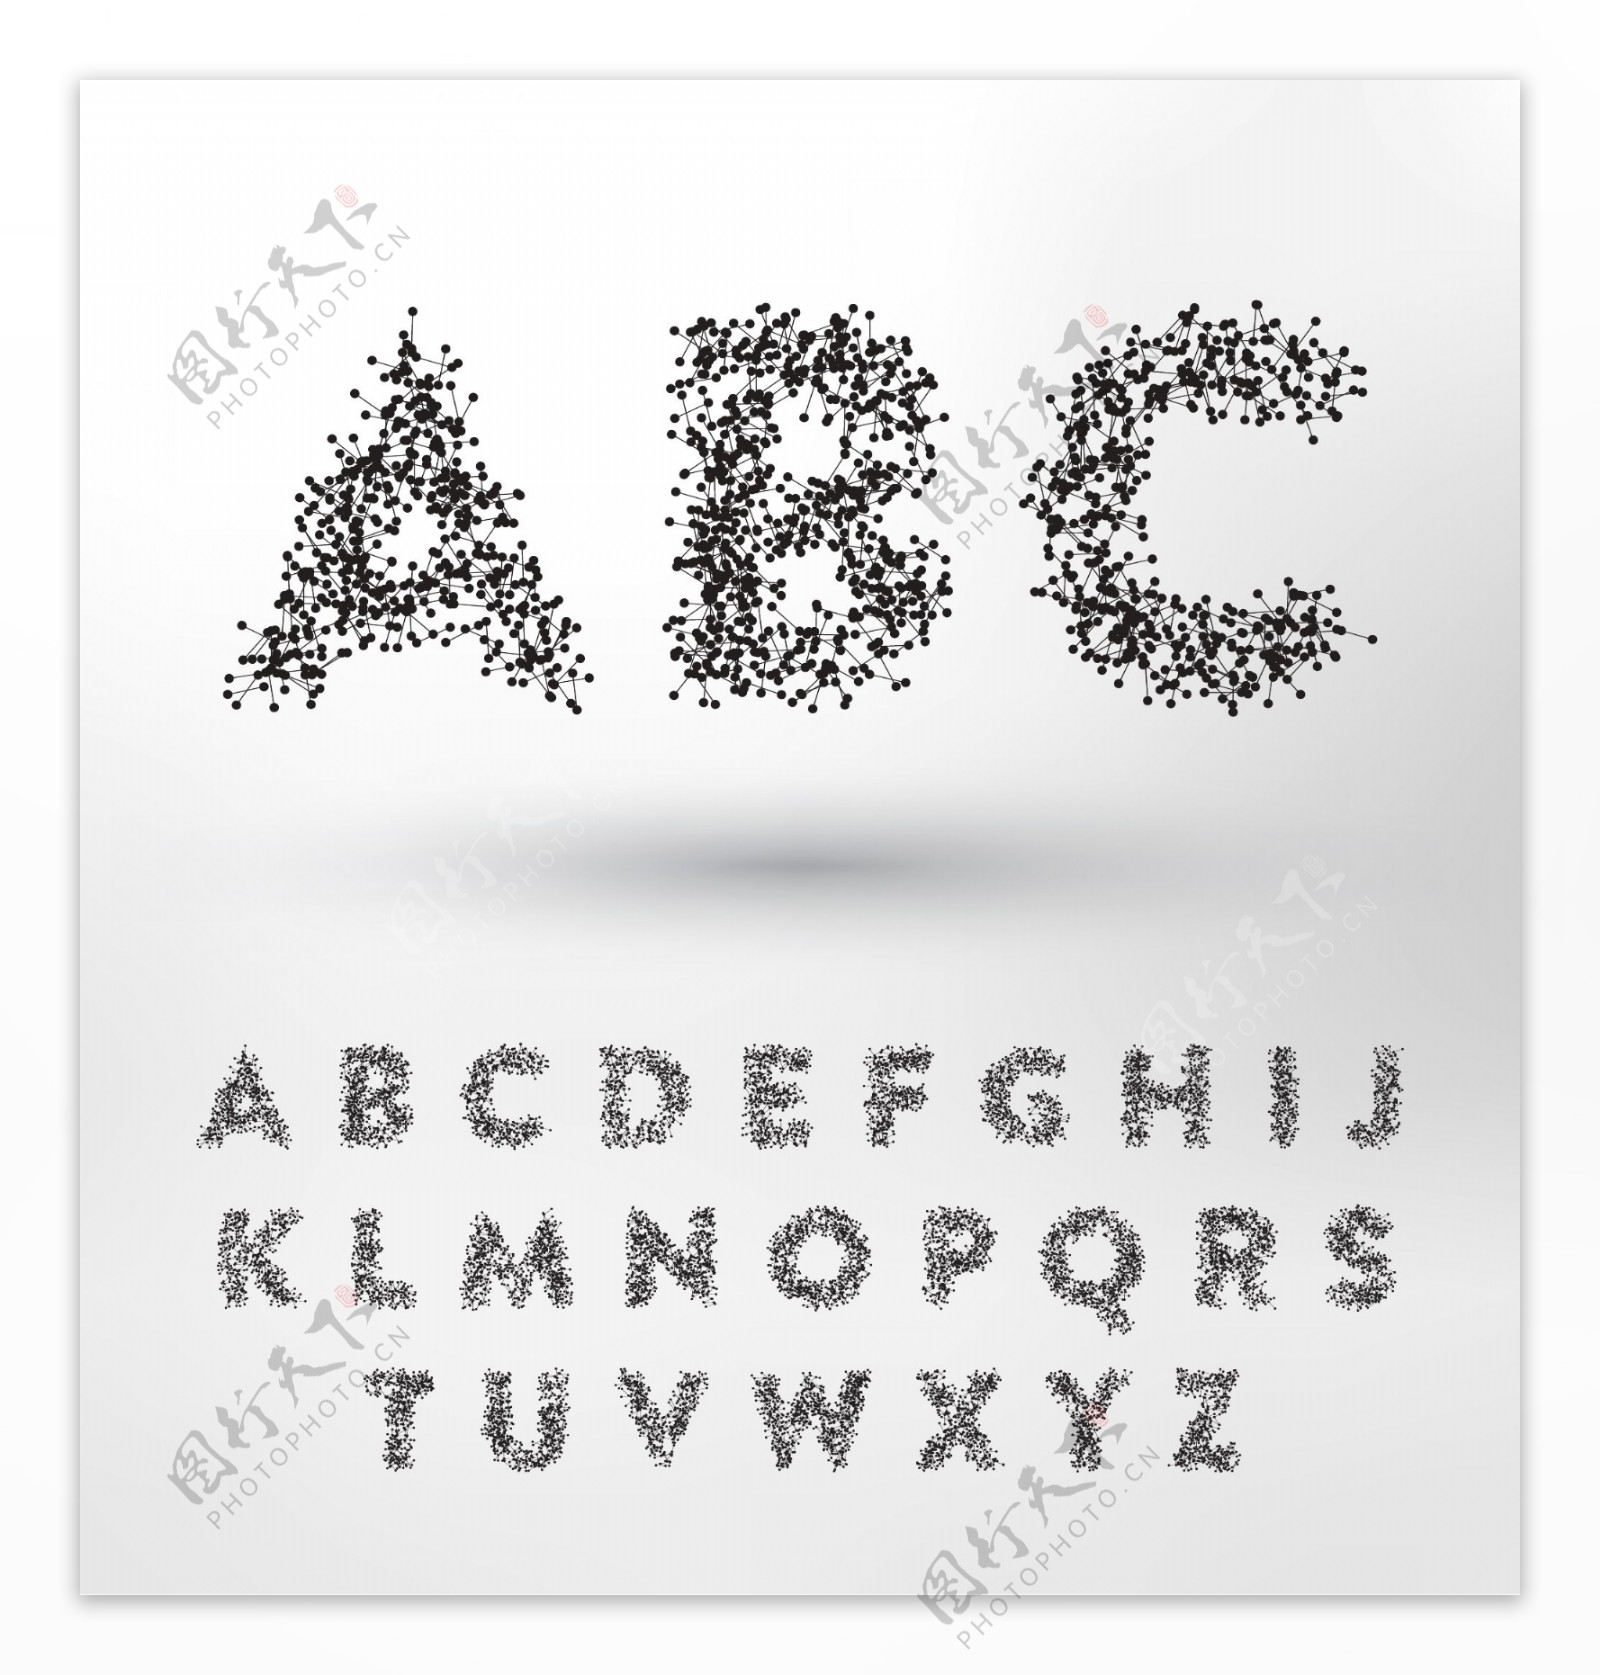 抽象字母设计